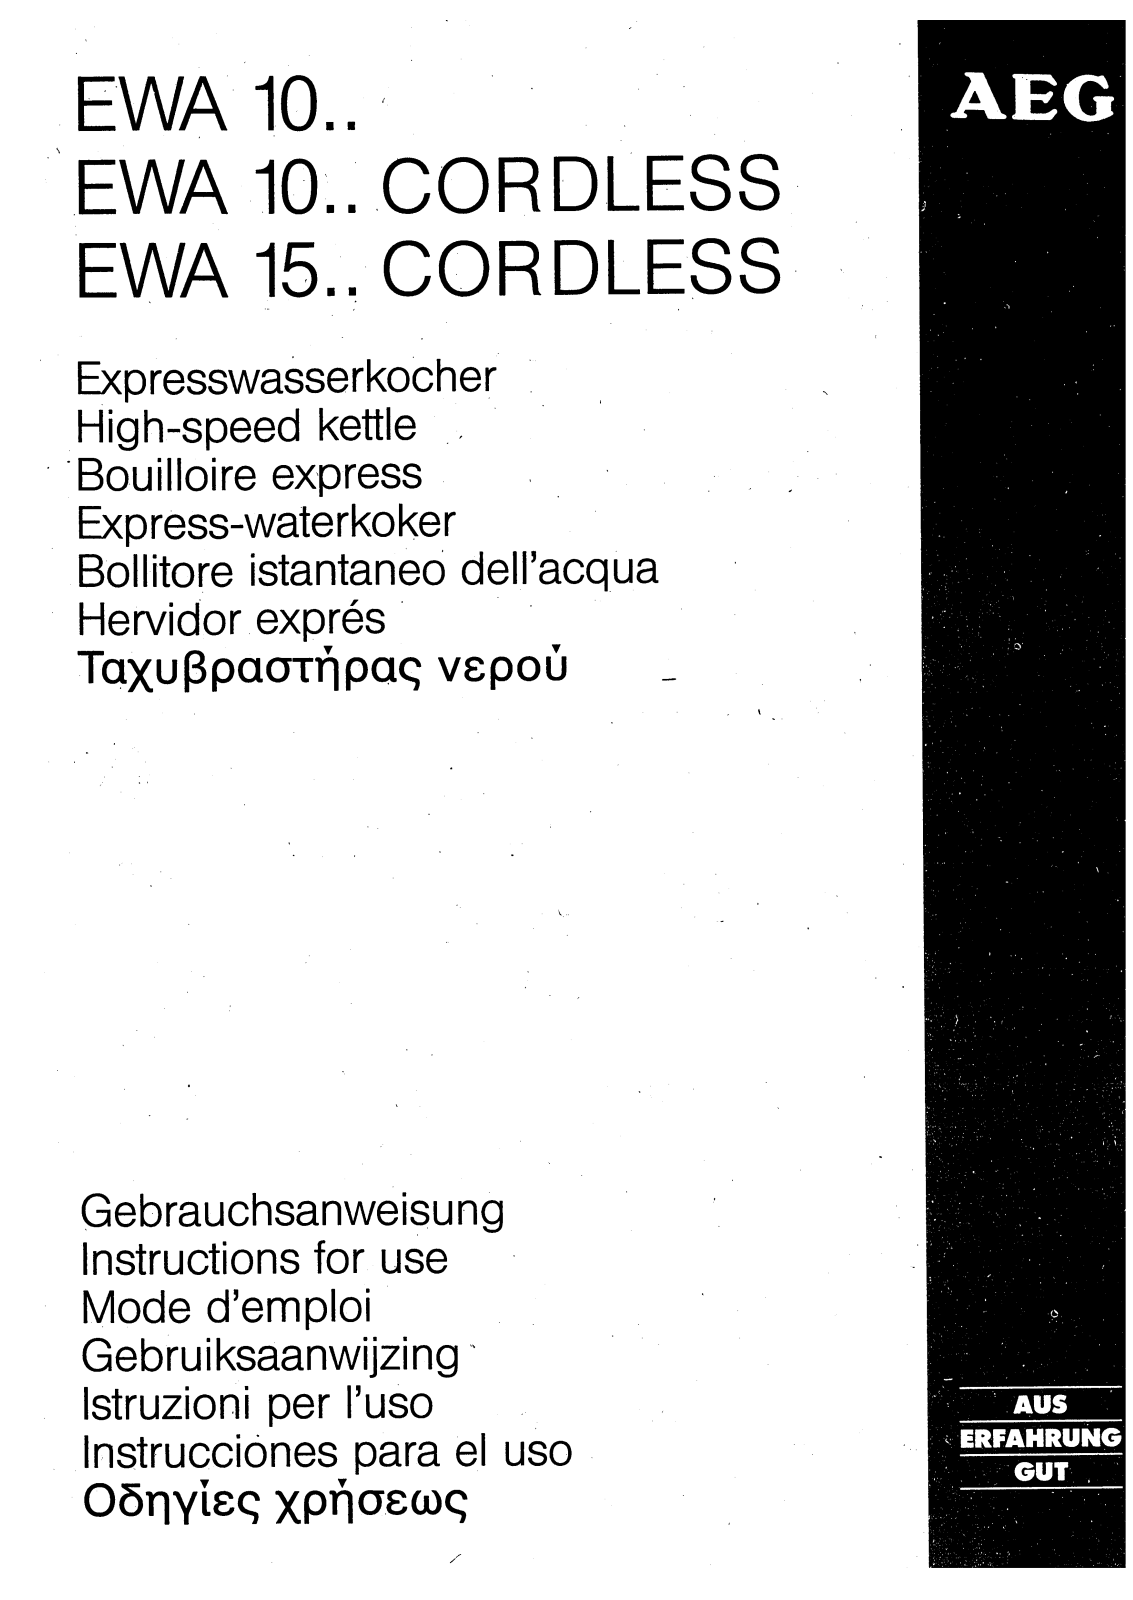 Electrolux EXPRESSKOCH EWA1510C, EWA1004 CORDLESS, EXPRESSKOCHEEWA1500 User Manual